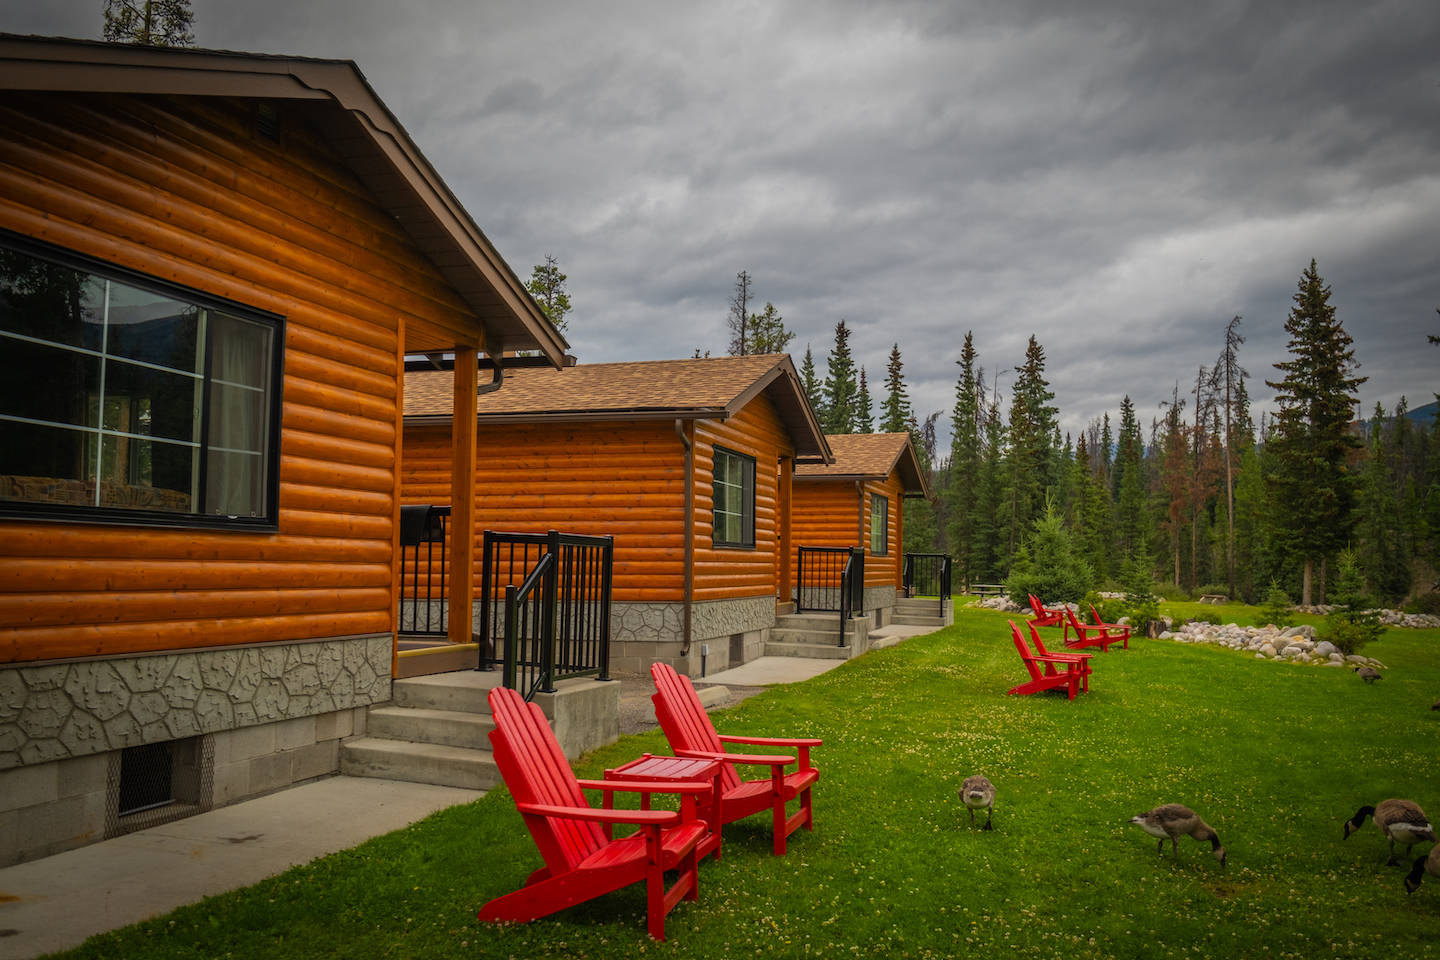 alpine village Resort - Jasper Cabin Rentals - Icefields Parkway Hotels